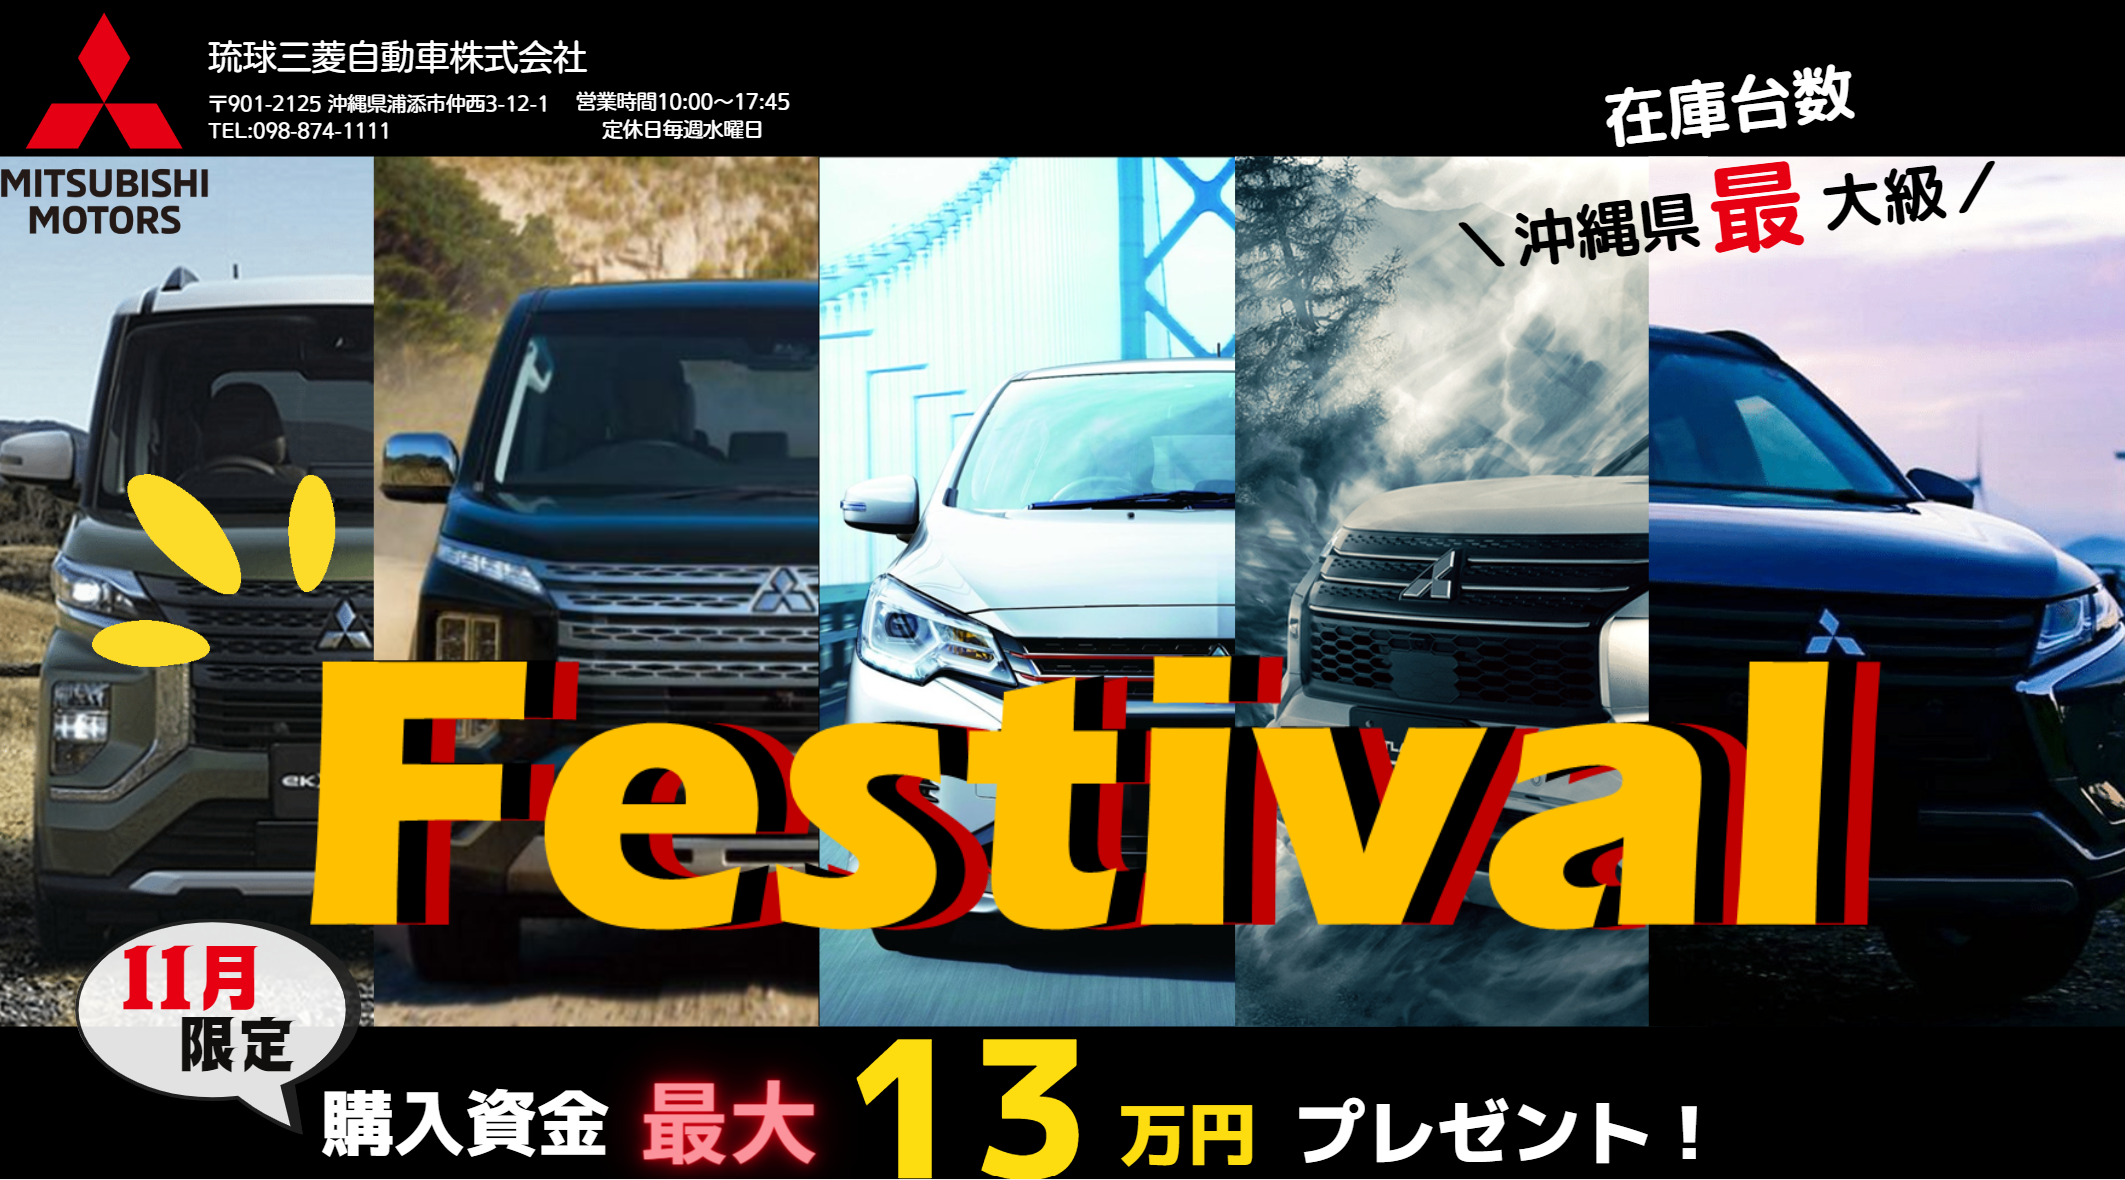 琉球三菱11月中古車フェスティバル開催